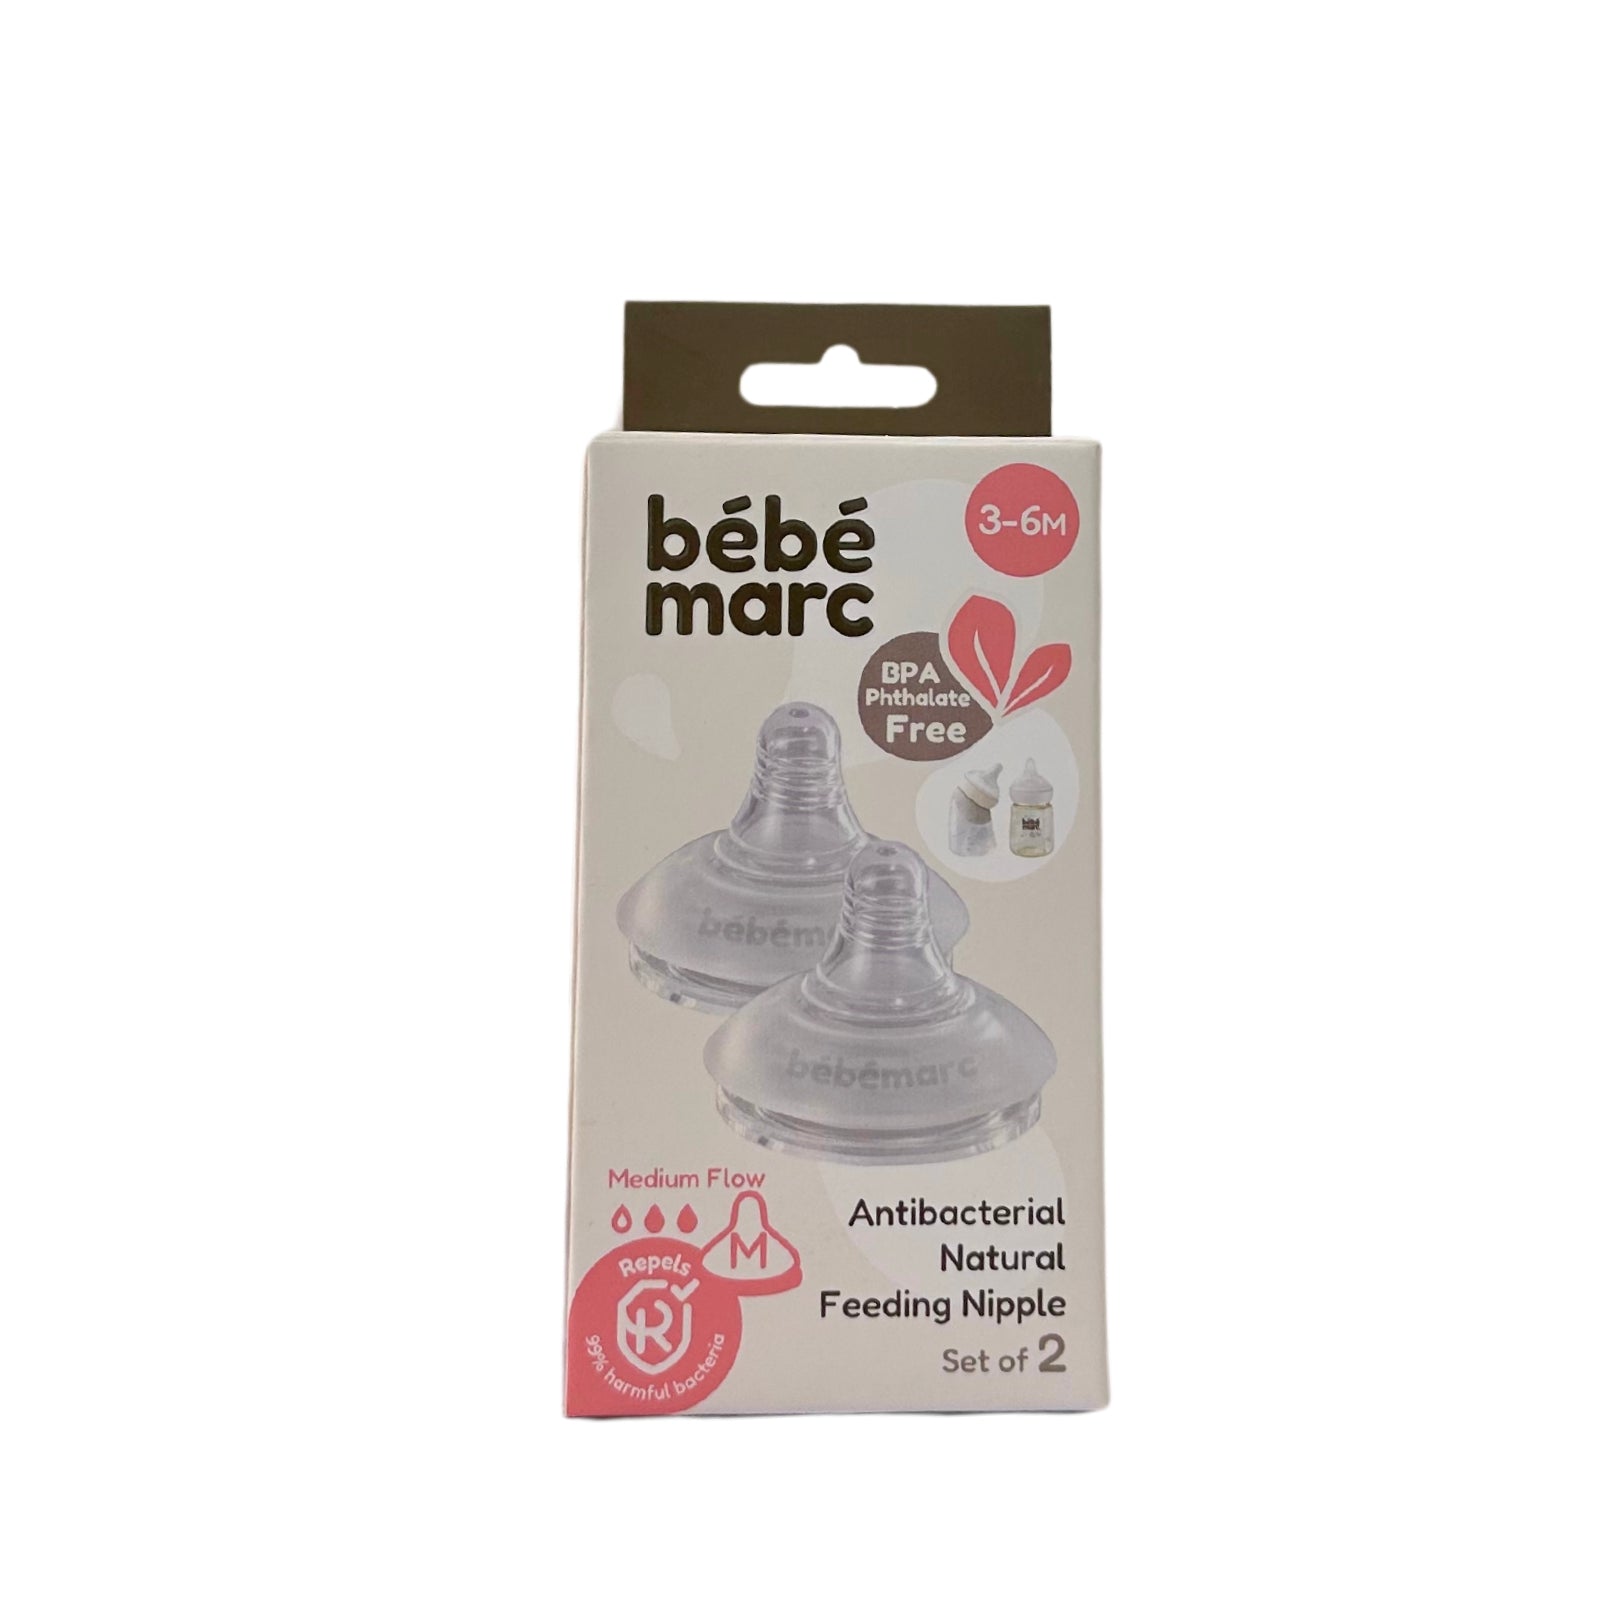 bebemarc antibacterial natural feeding nipple packaging, set of 2